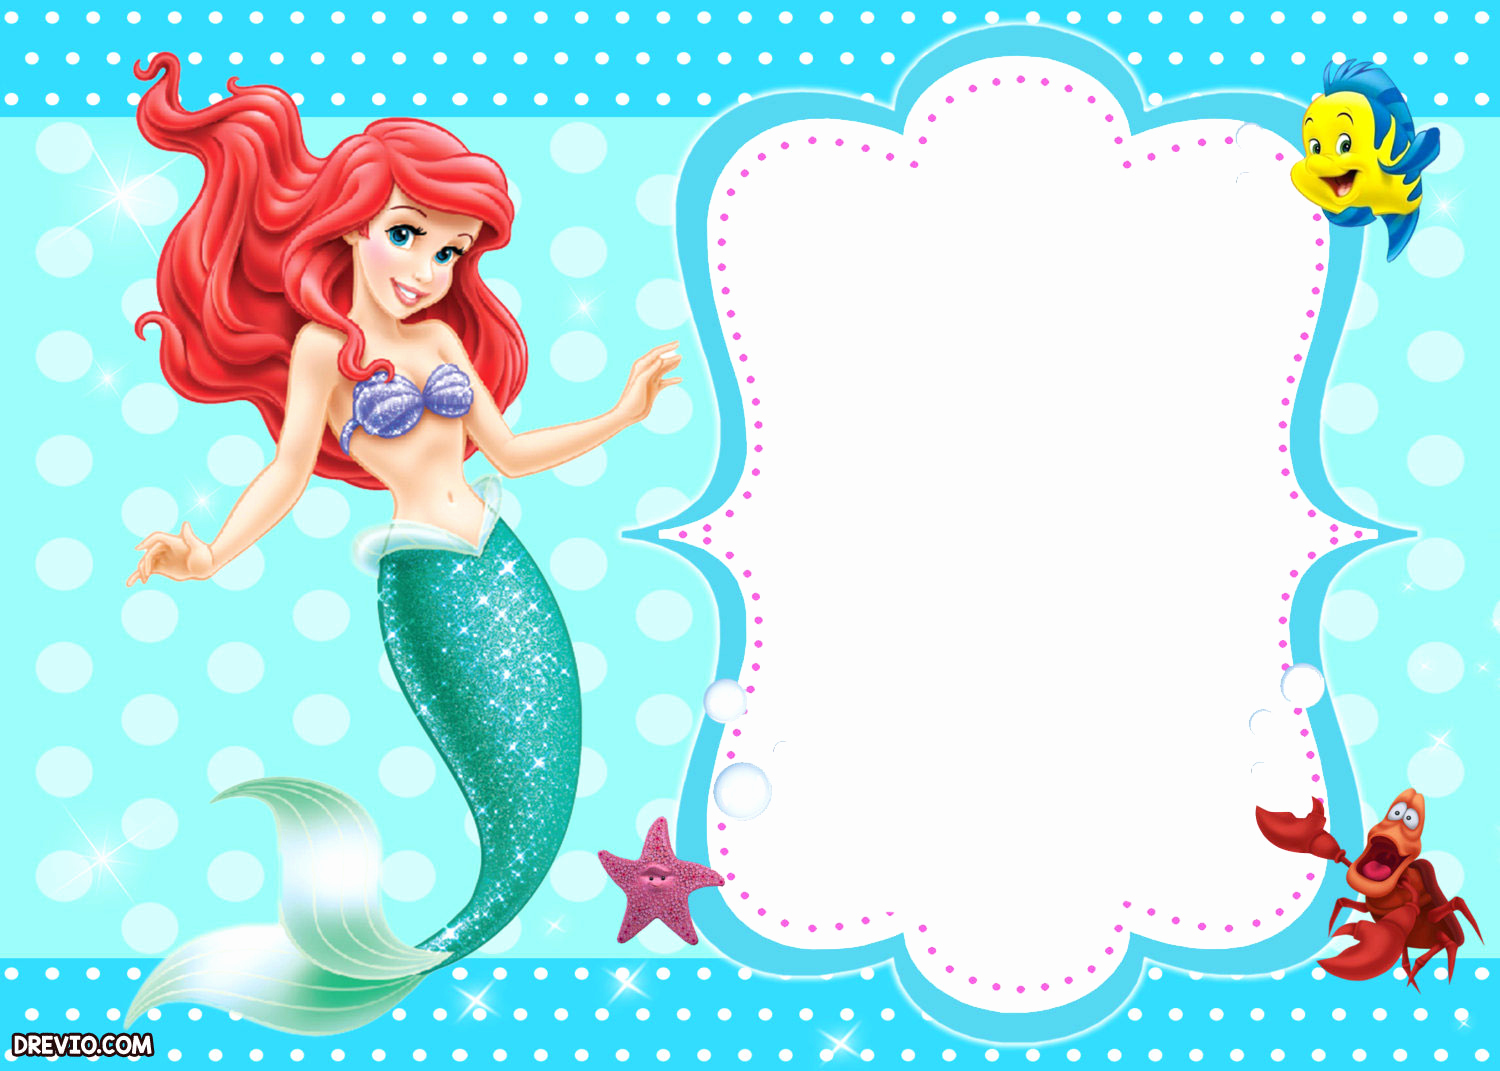 Little Mermaid Invitation Template Luxury Updated Free Printable Ariel the Little Mermaid